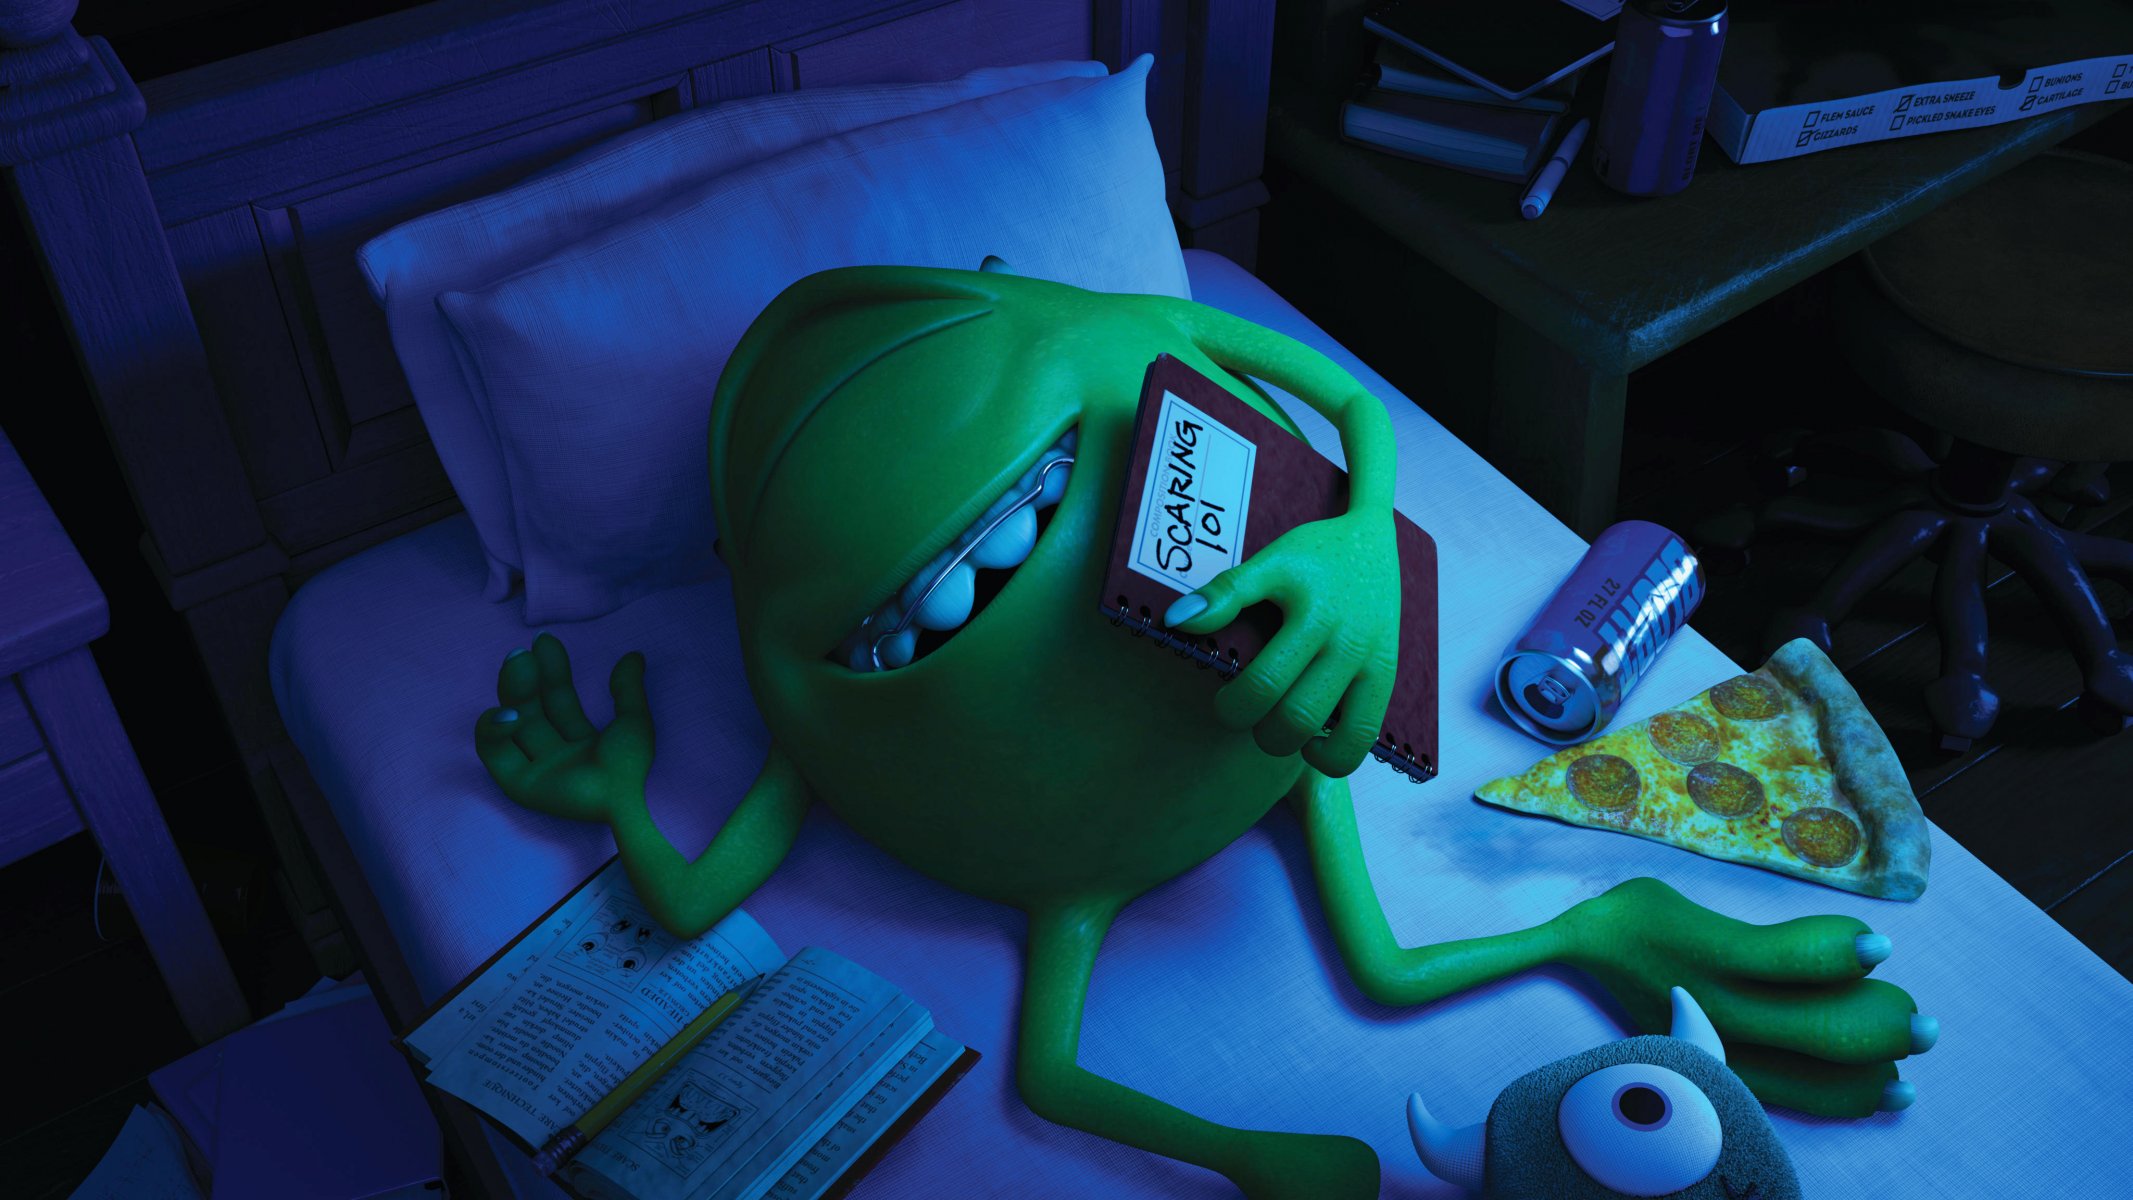 дисней pixar университет монстров корпорация монстров монстры кровать зеленый синий одноглазый улыбка брекеты майк вазовский спящий монстр